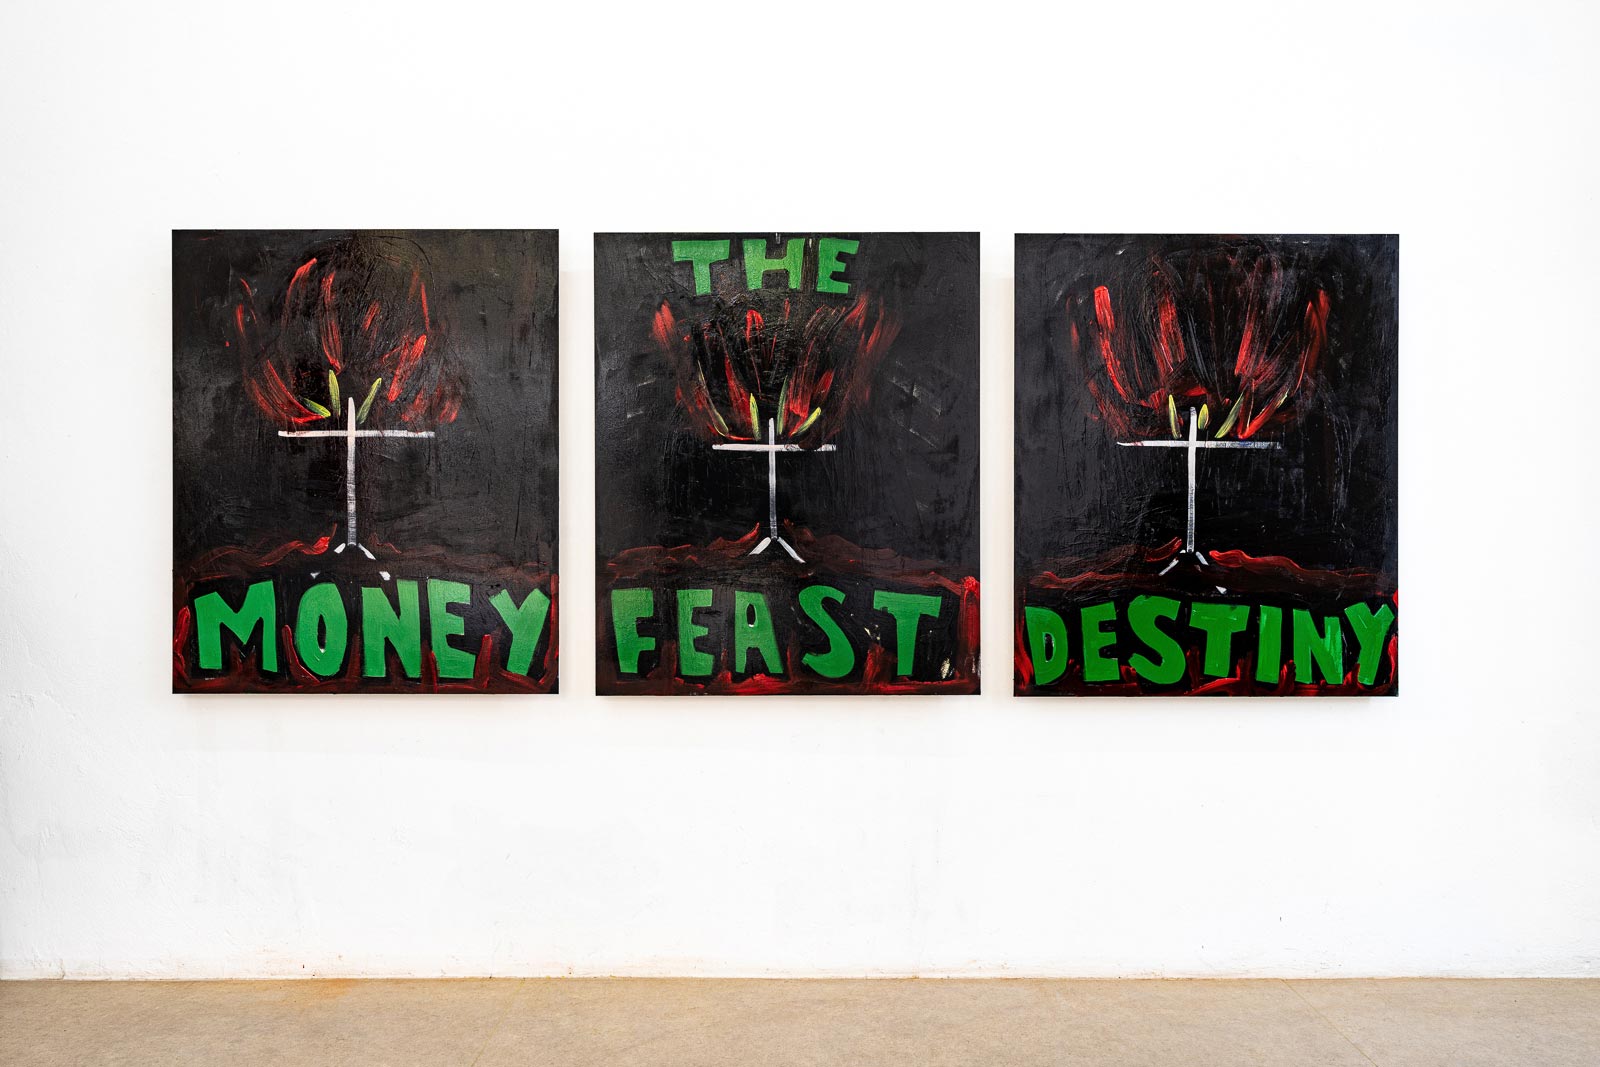 Pierre von Helden – Malerei – The Money Feast Destiny (From Coast to Coast)